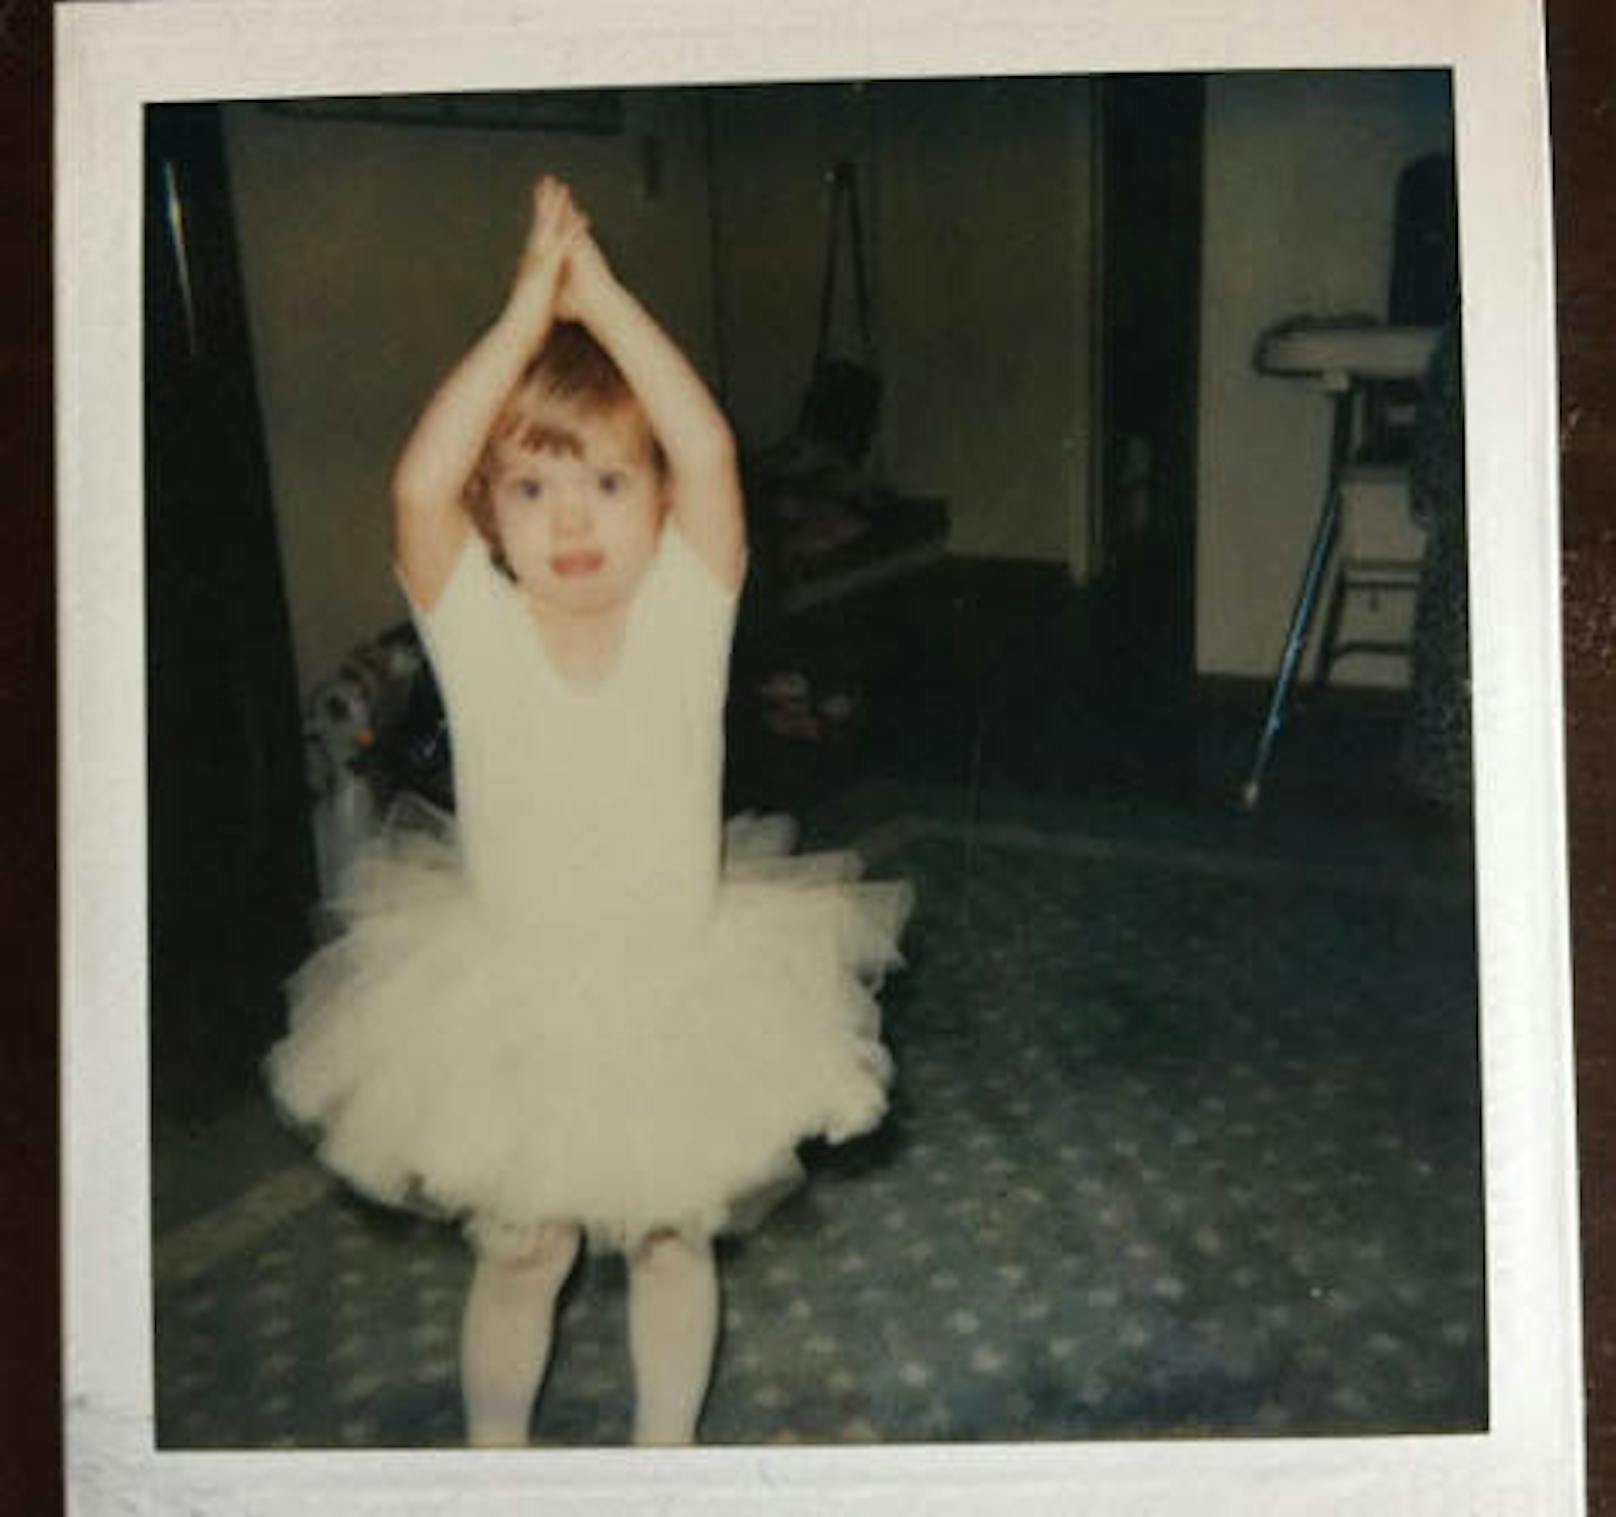 20.09.2017: Katy Perry hat es schon wieder getan. Wenige Tage, nachdem sie ihren Instagram-Followern ein Bild von sich als süßer Teenie gezeigt hat, postete sie nun ein Foto von sich als Kleinkind. Im Ballett-Tutu übt sie darauf schon mal die Posen, die ihr Jahre später auf den großen Bühnen hilfreich sein werden.